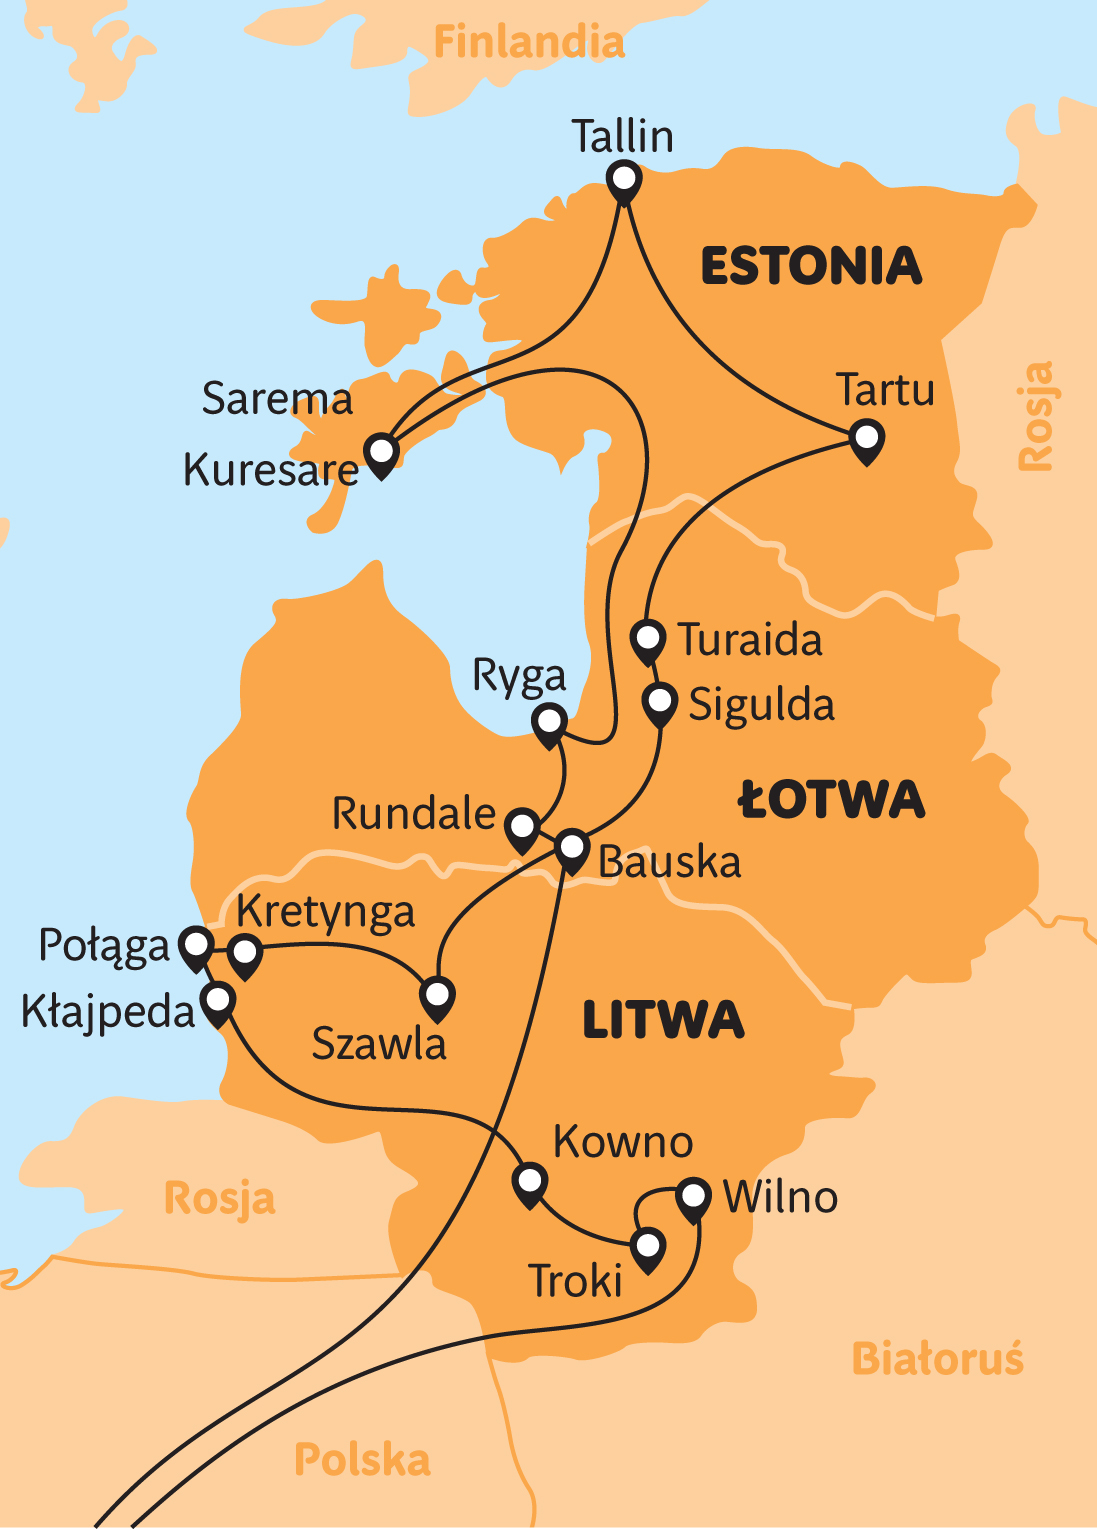 Bałtyckim szlakiem- Litwa- Łotwa- Estonia!